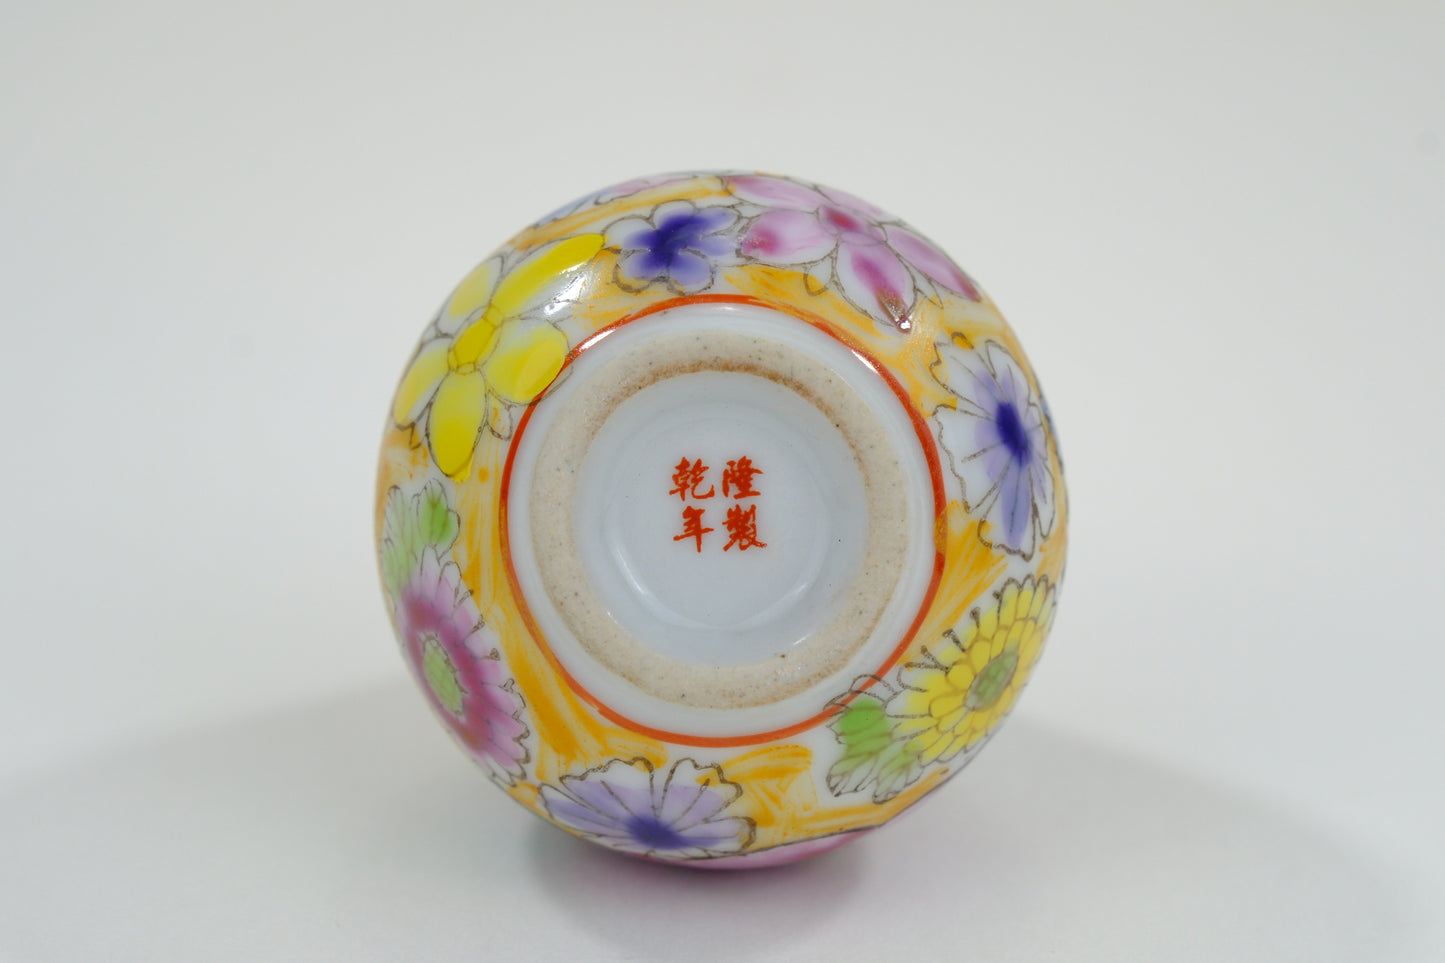 Vintage Chinese Porcelain Floral Motif Snuff Bottle 3"